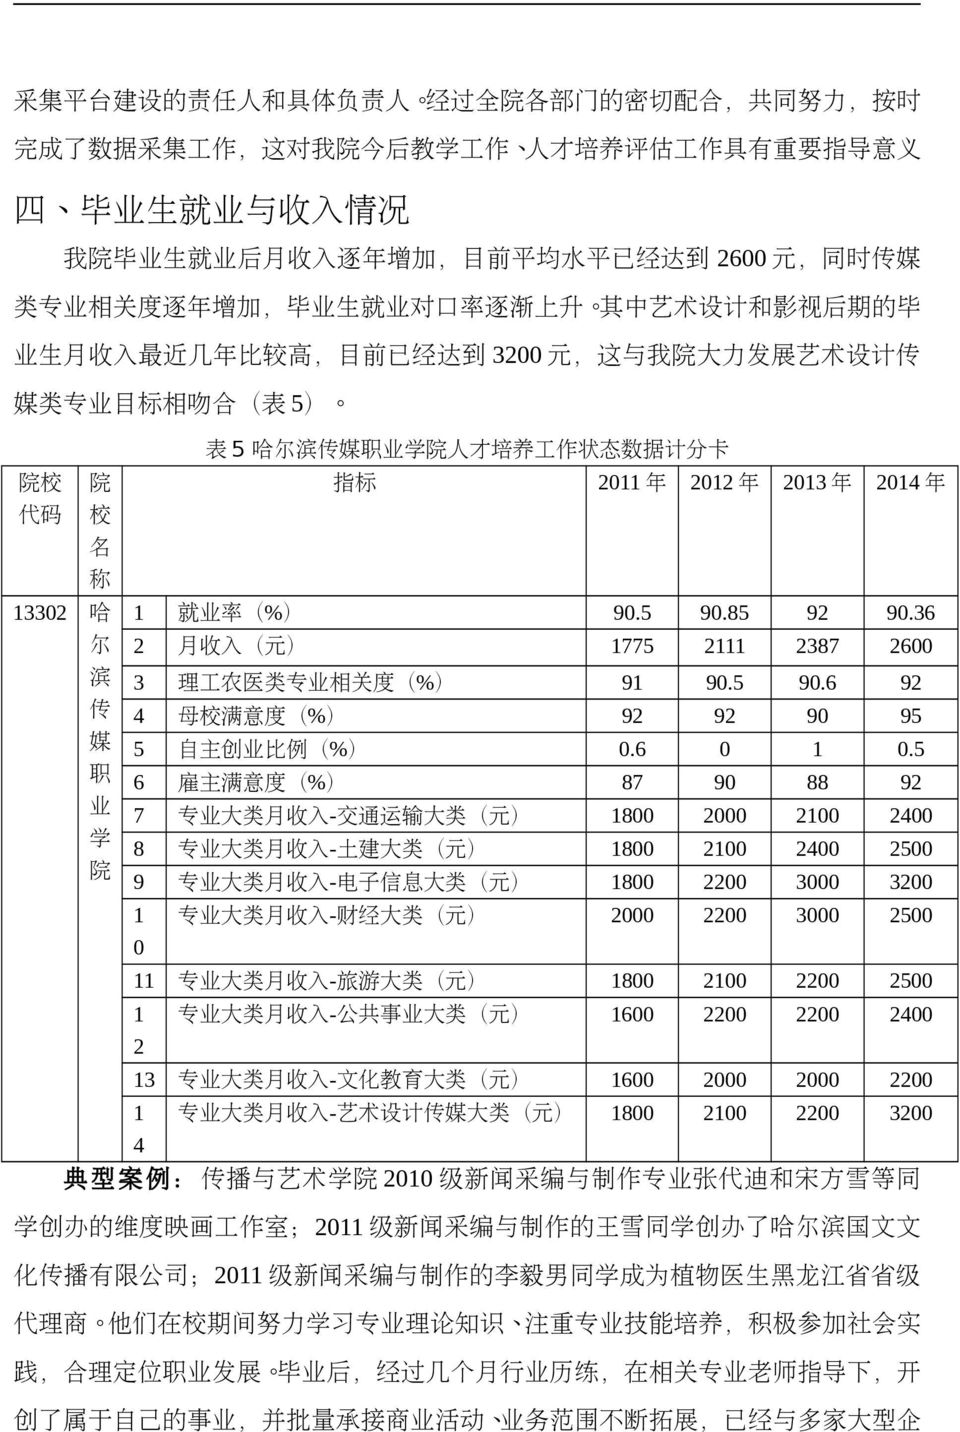 5 哈 尔 滨 传 媒 职 业 学 院 人 才 培 养 工 作 状 态 数 据 计 分 卡 院 校 院 指 标 2011 年 2012 年 2013 年 2014 年 代 码 校 名 称 13302 哈 1 就 业 率 (%) 90.5 90.85 92 90.